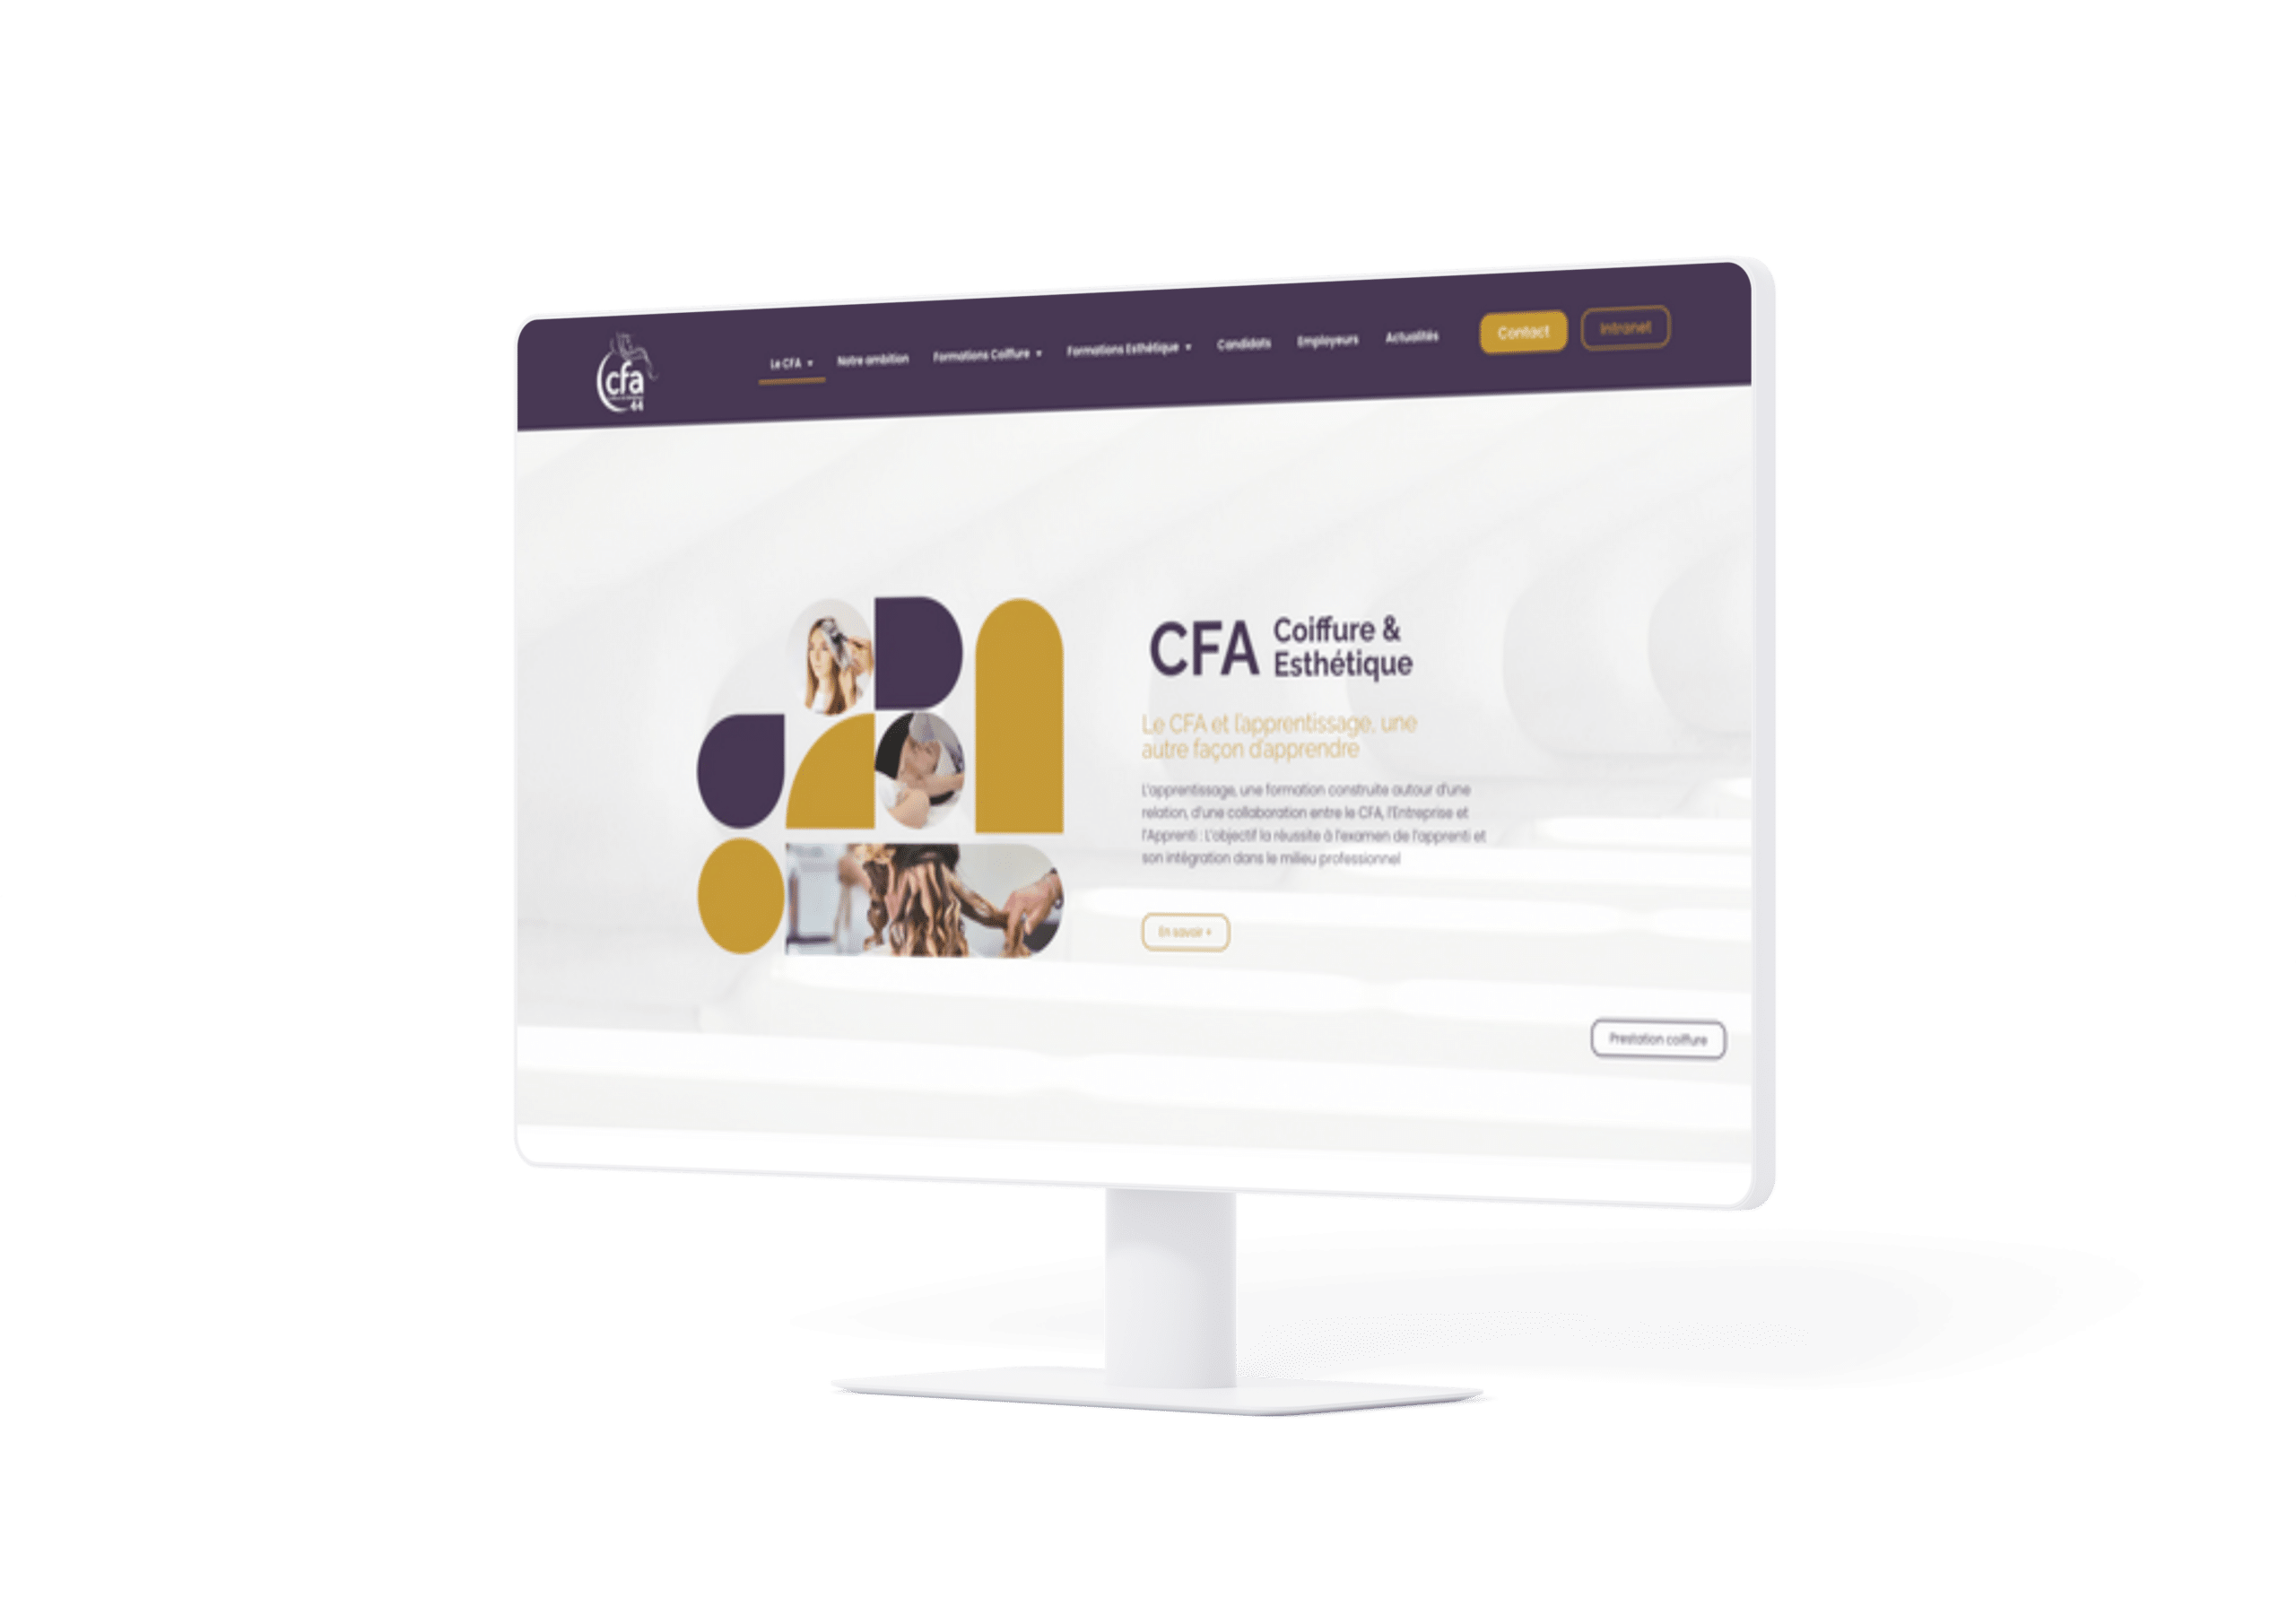 Création de site web - Mockup CFA Coiffure & Esthétique 44 Ordinateur